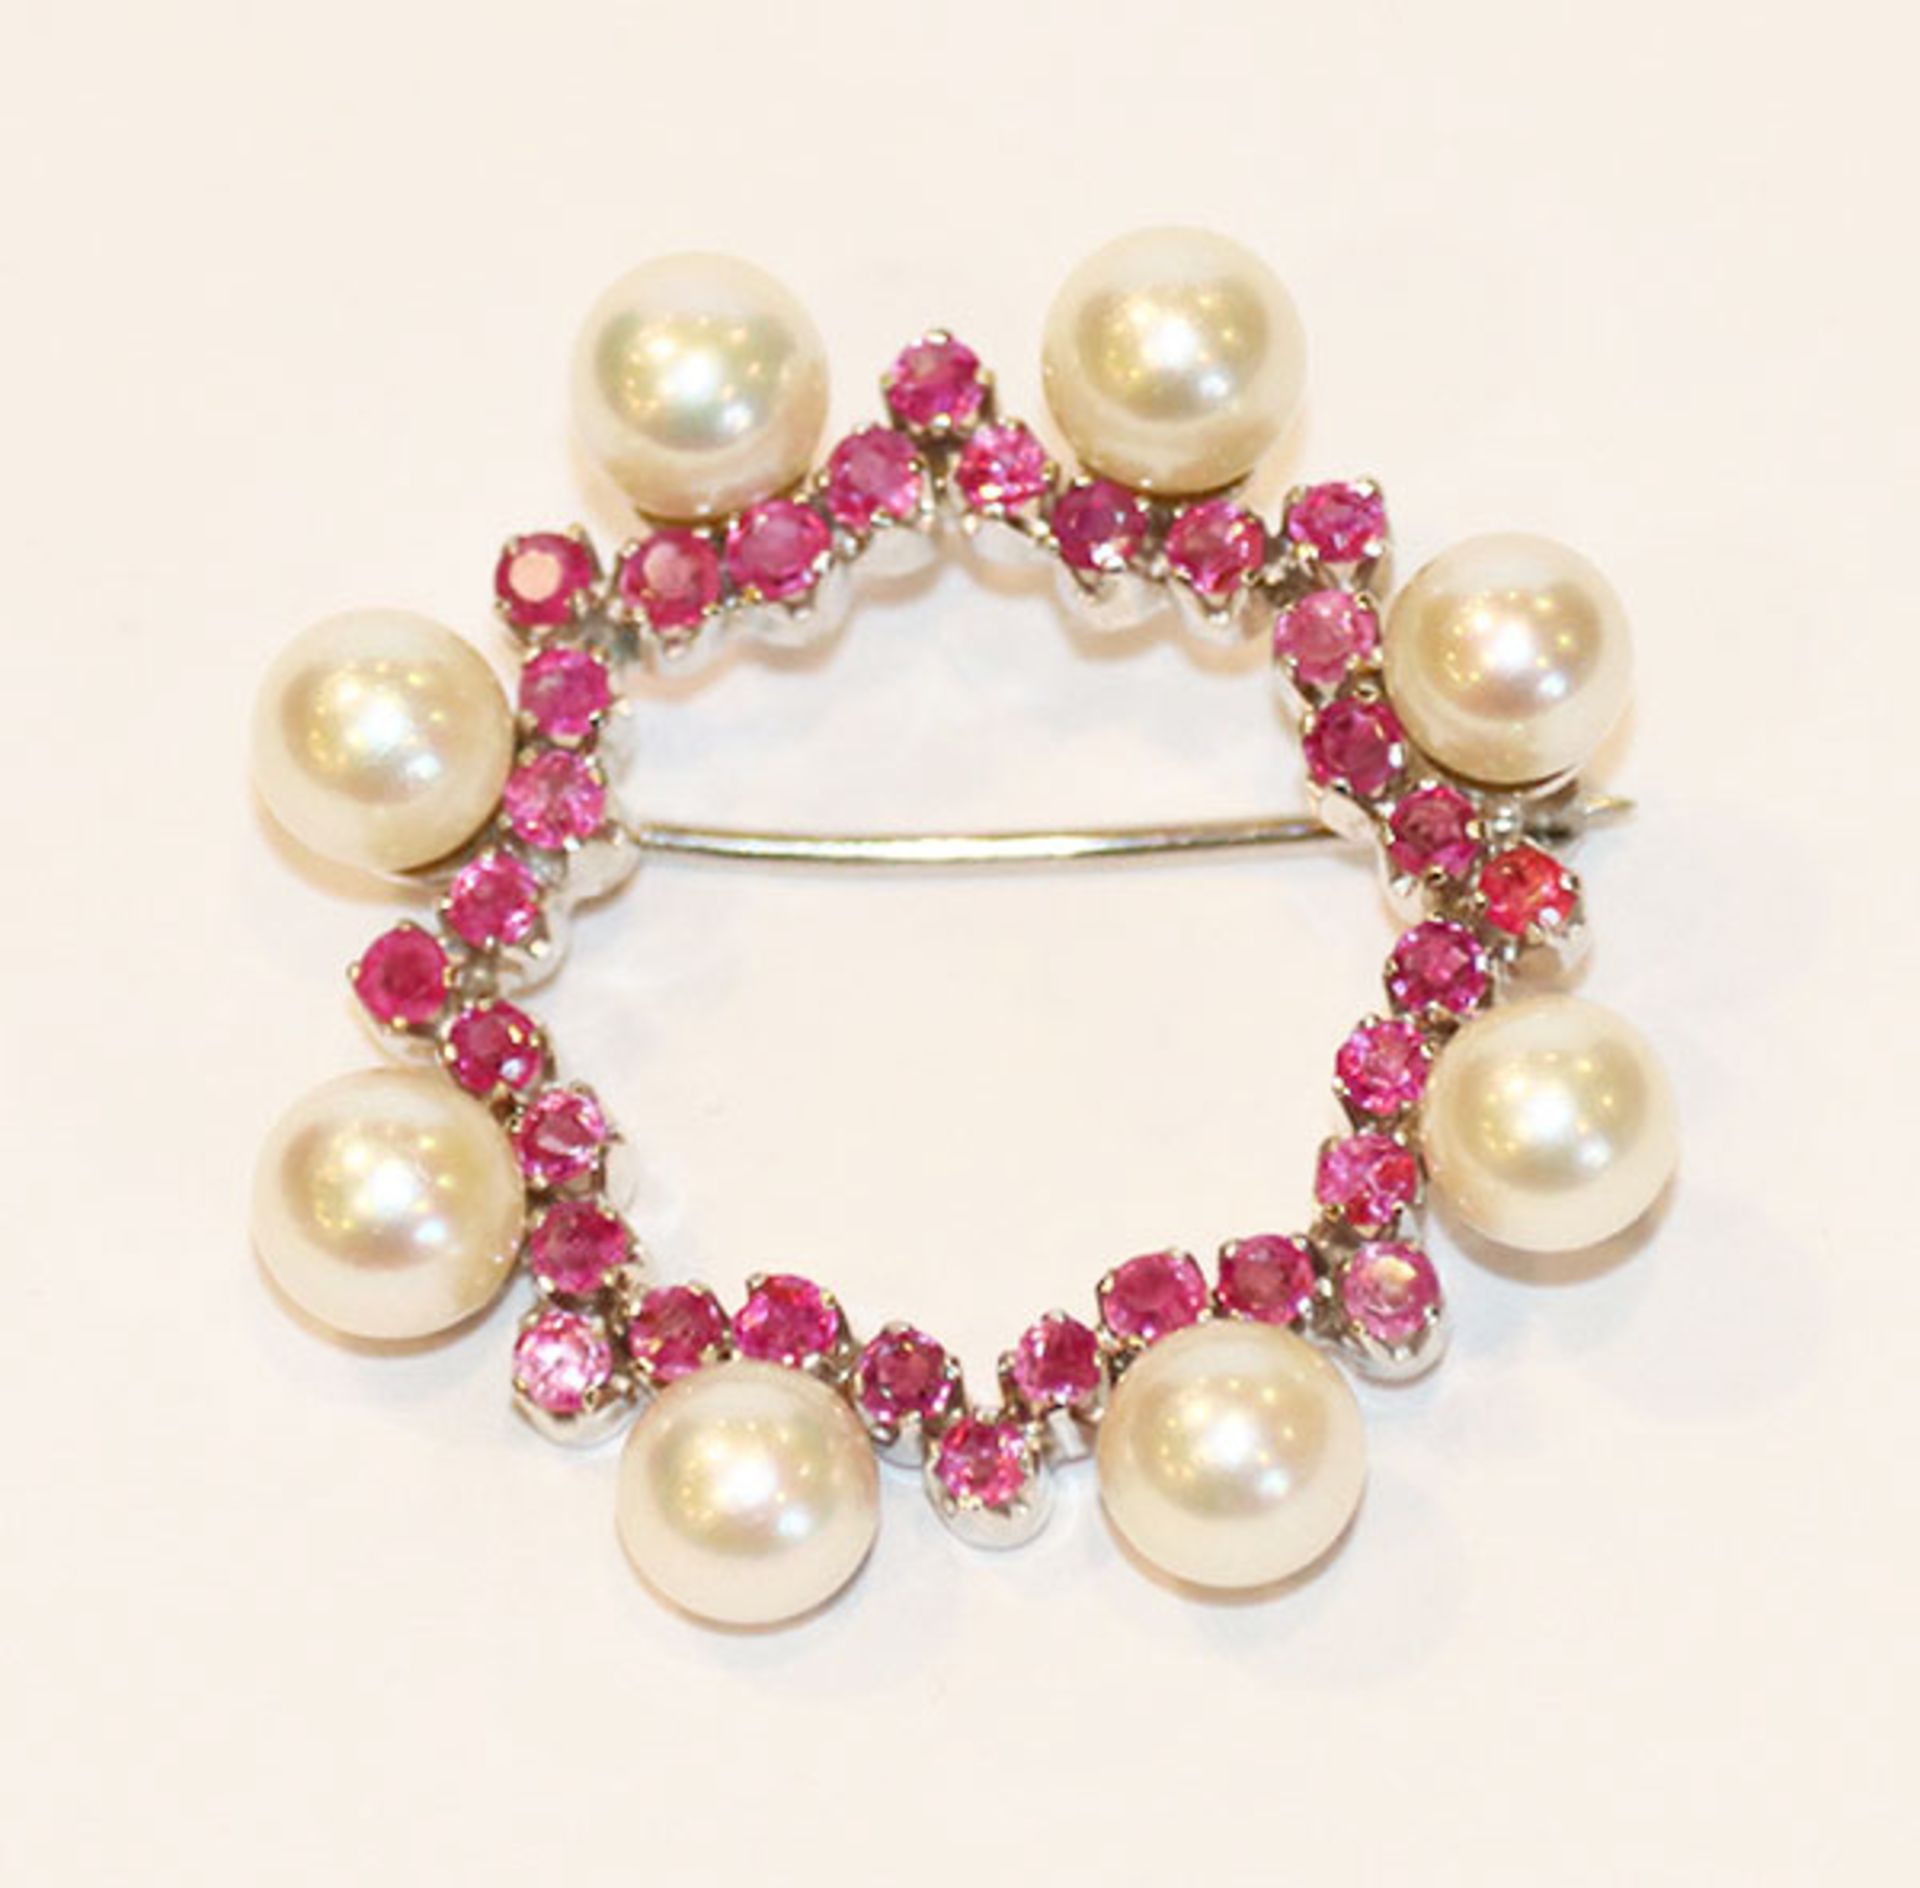 18 k Weißgold Brosche mit 8 Perlen und Rubinen besetzt, 8,2 g.r, D 3,2 cm